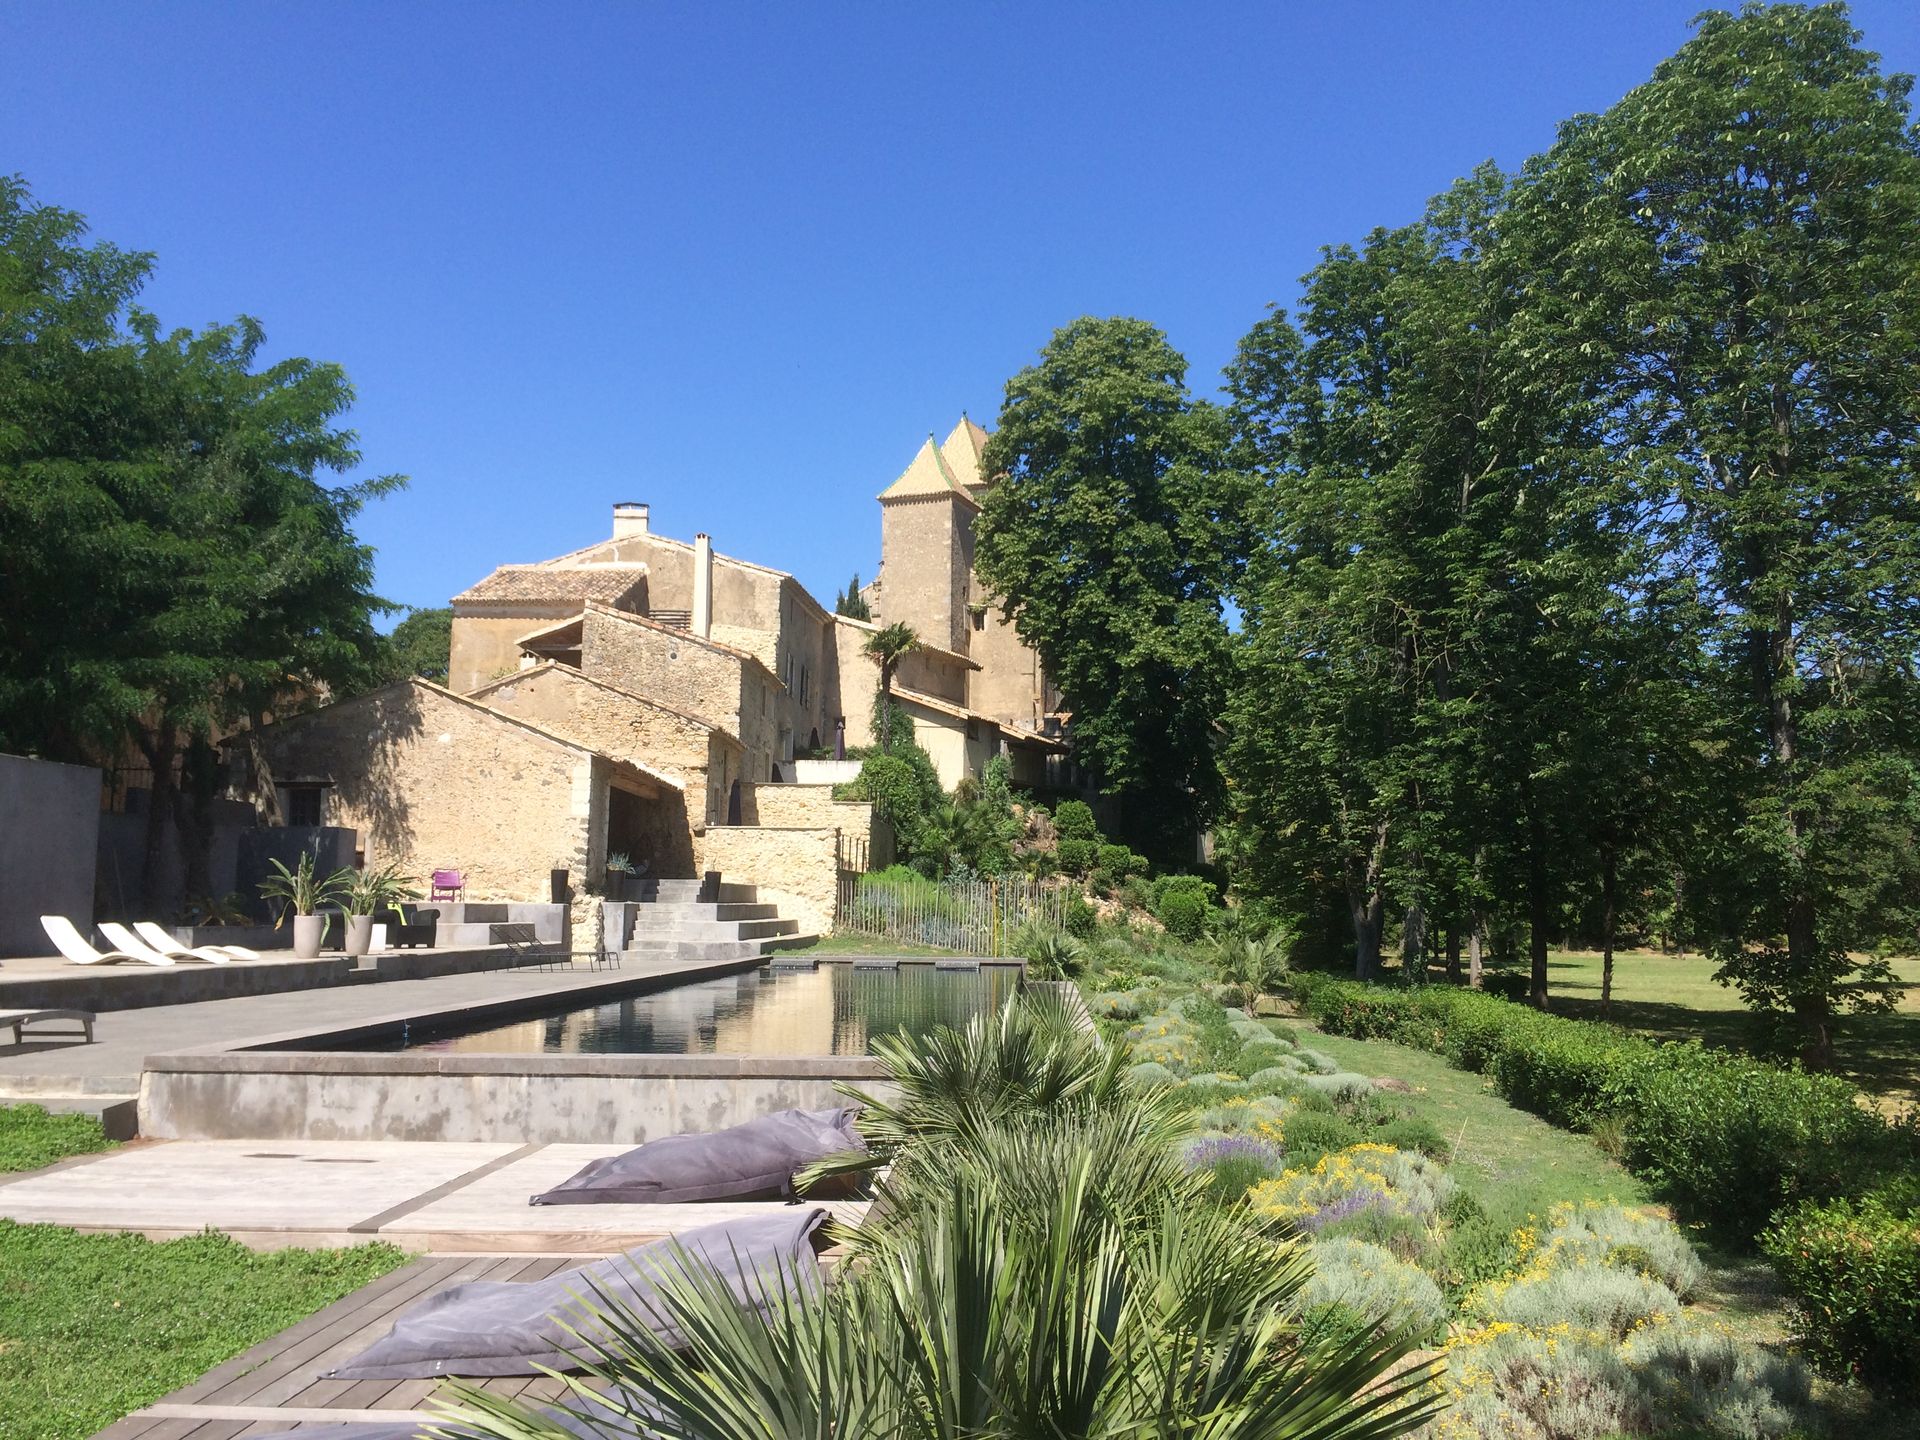 Vue sur la piscine à débordement, les jardins et le château du 12ème siècle du Domaine de Ribaute près de Béziers